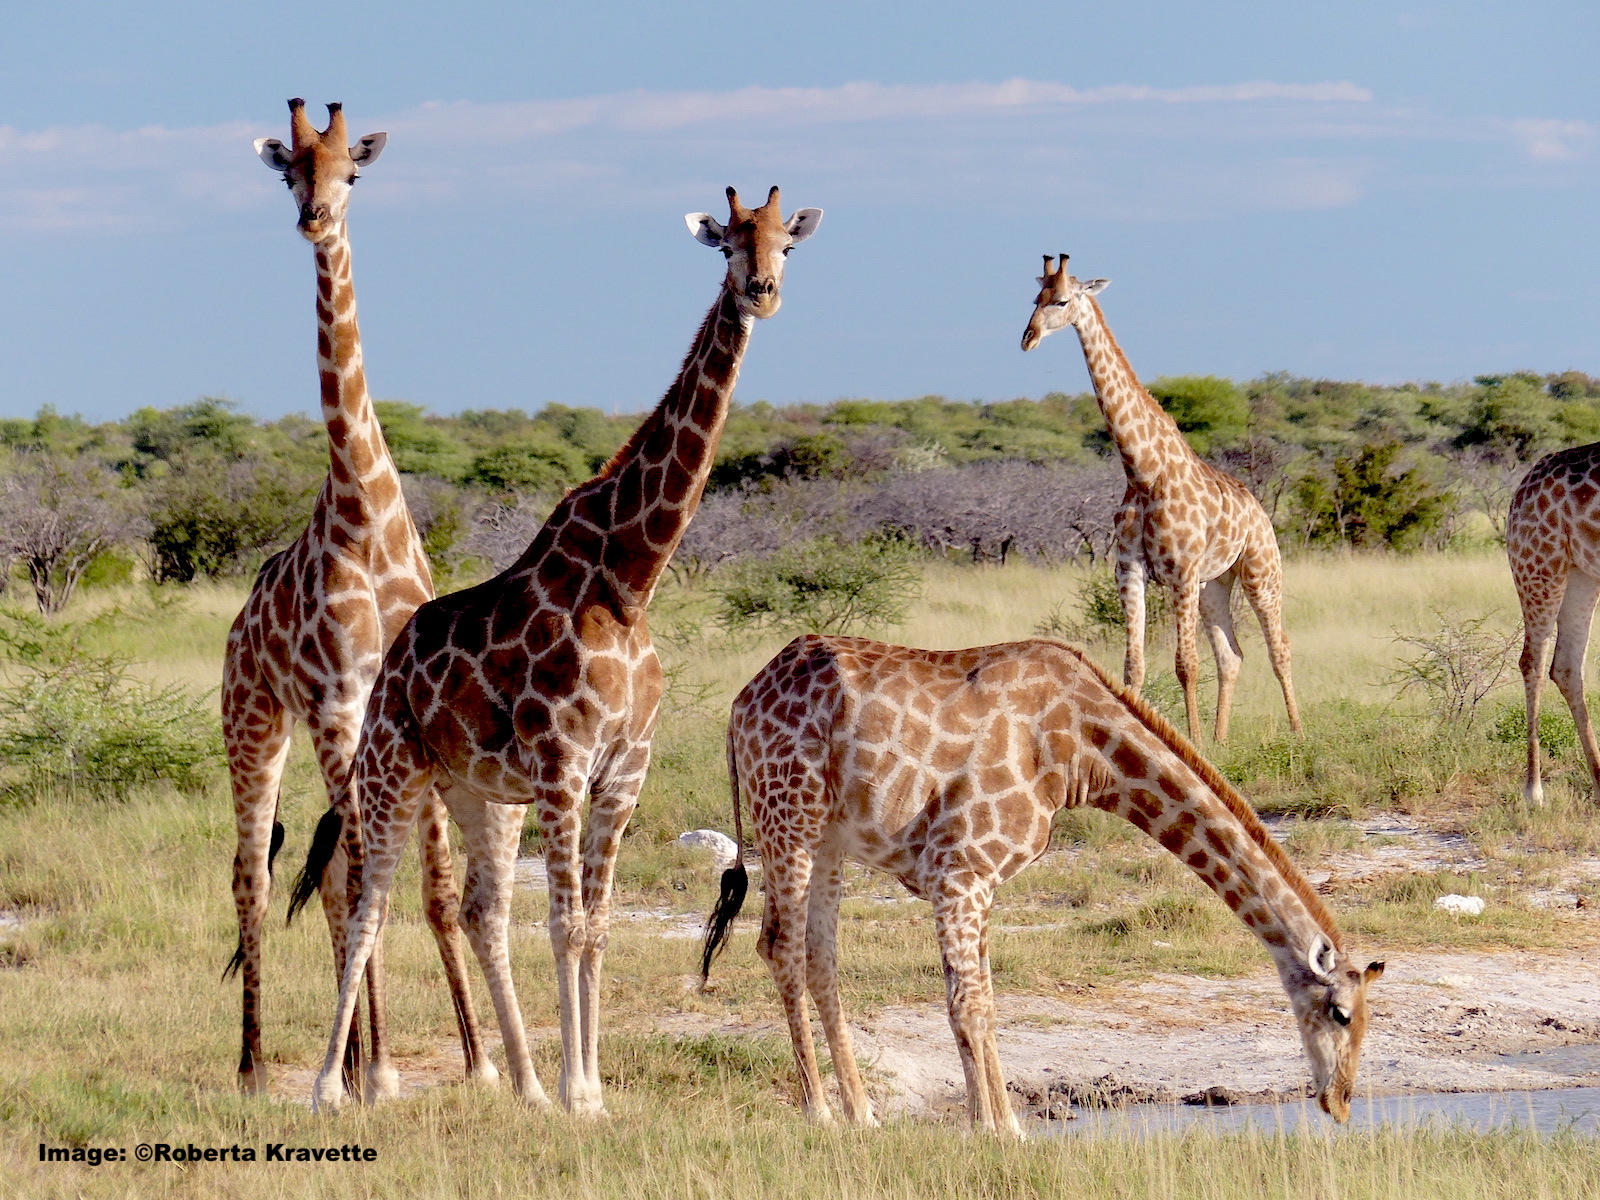 Giraffe family drinking in Etosha National Park, Namibia. Image: ©Roberta Kravette